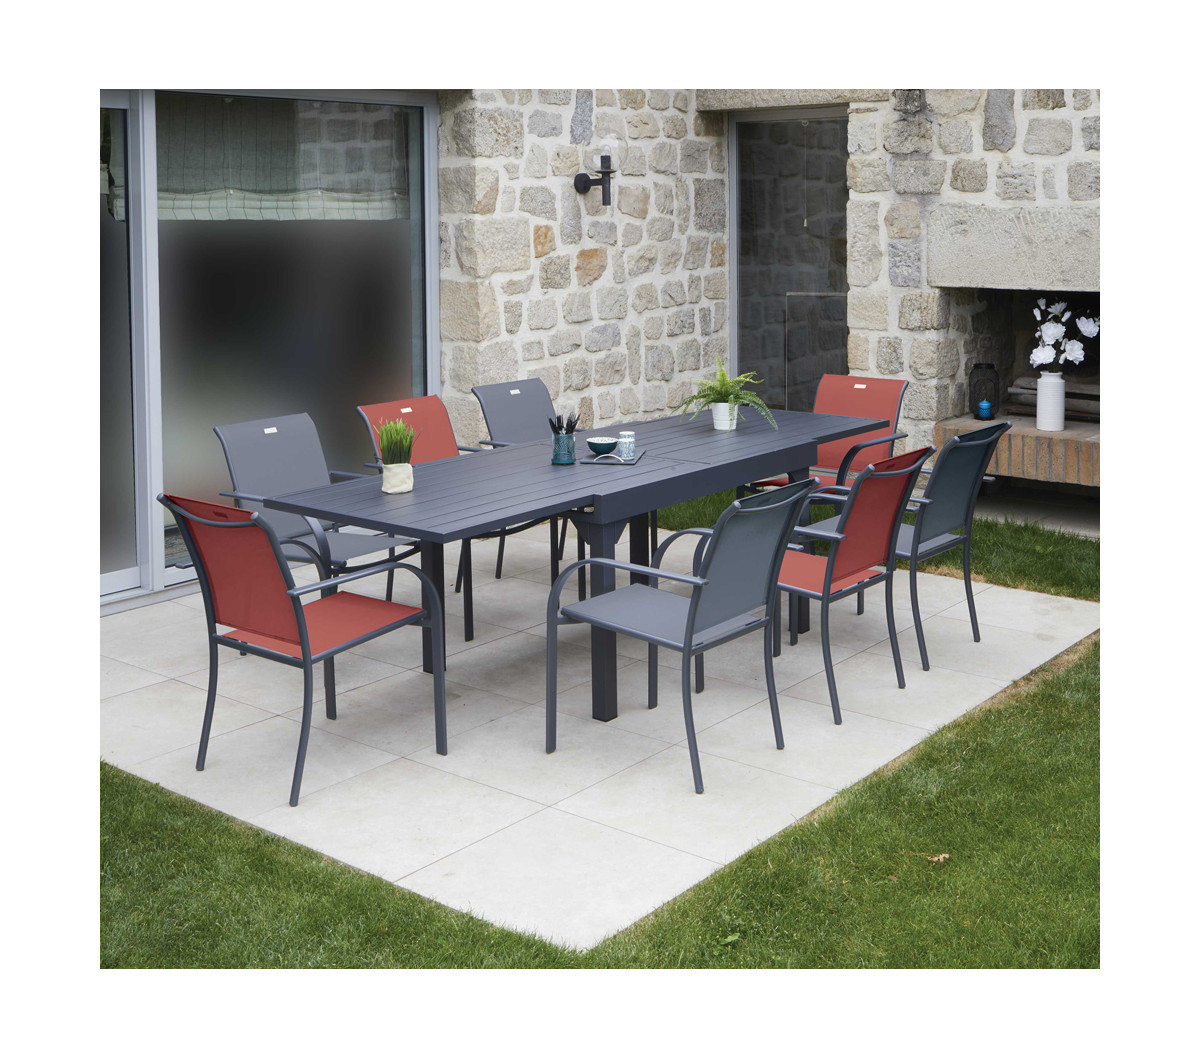 Table + chaises jardin XXL - Aluminium GRIS Graphite - MOBILIER DE